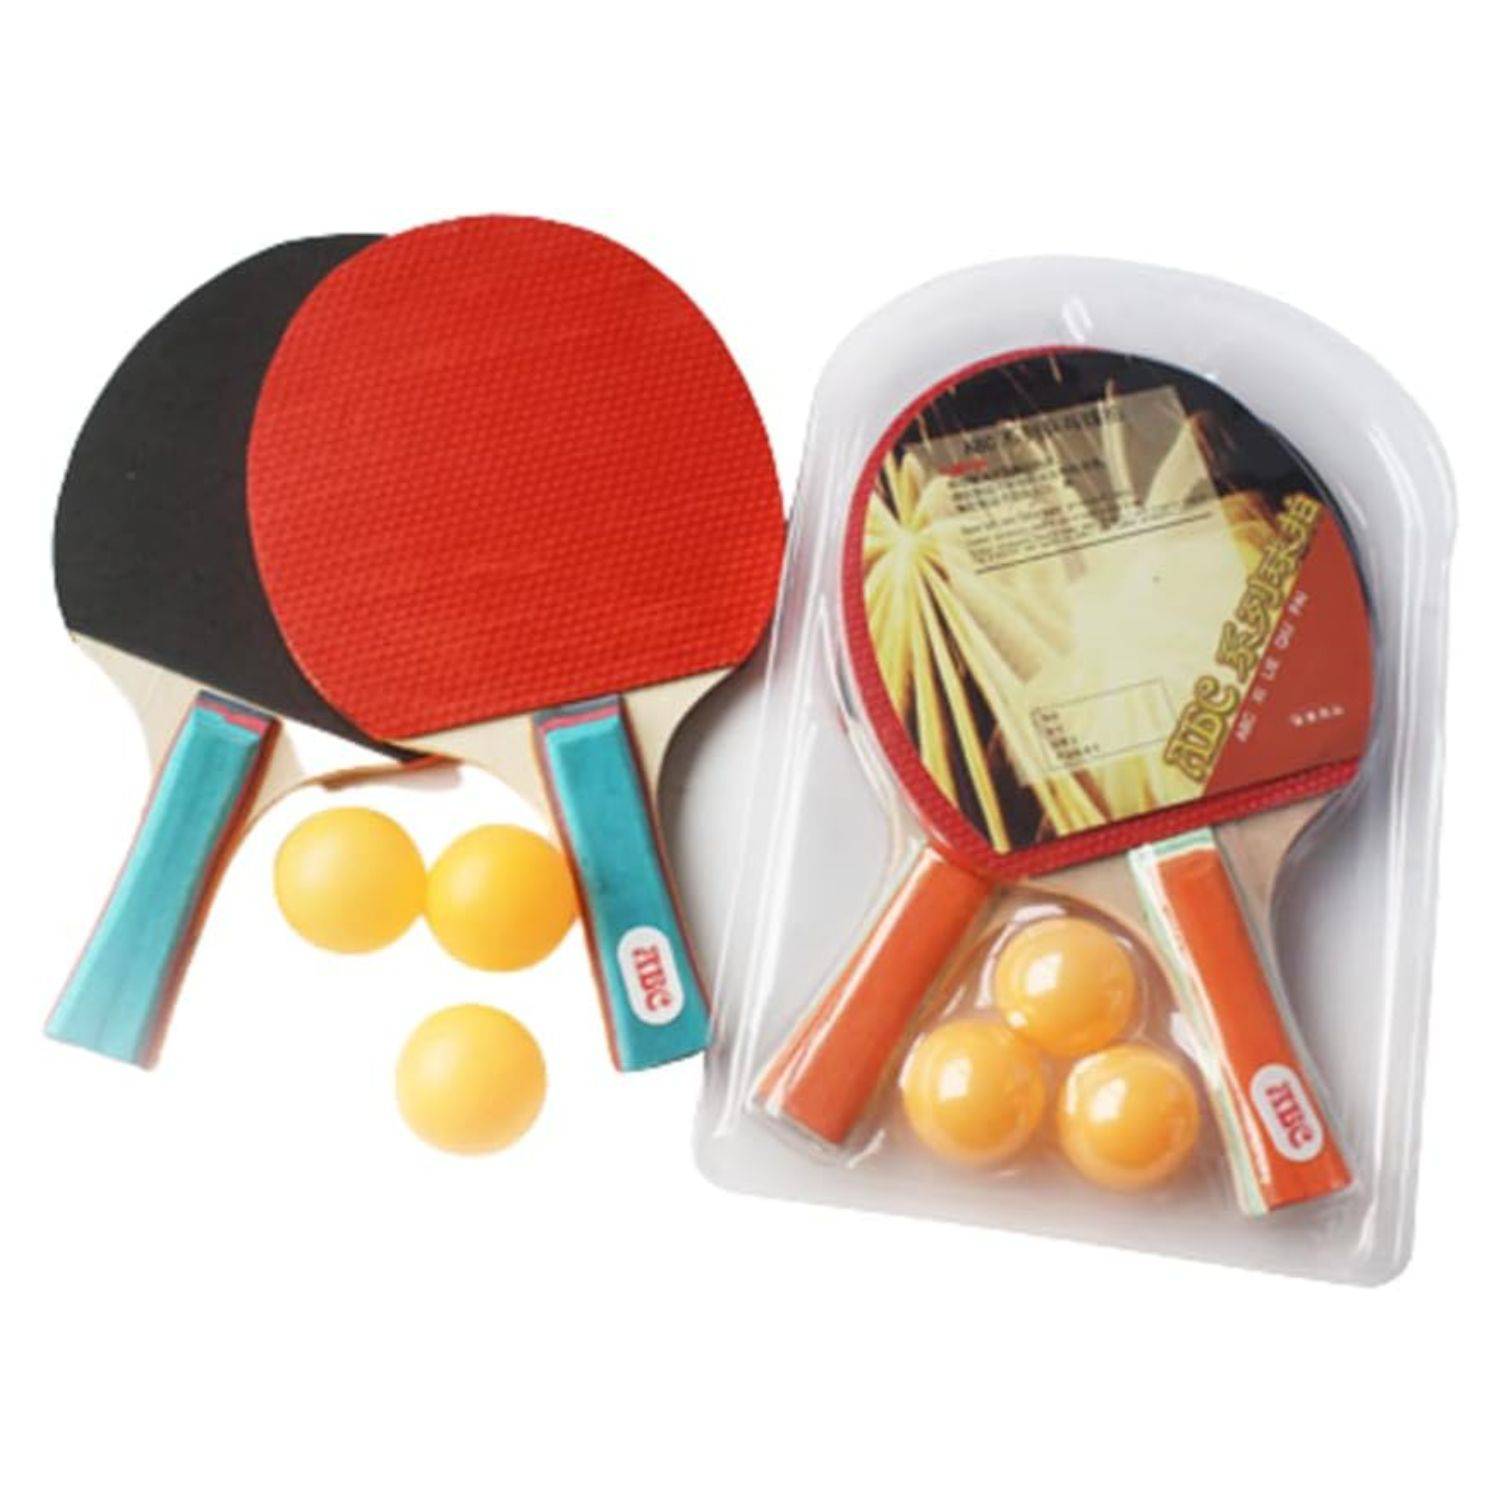 Juego de palas de ping-pong, aprobado por la ITTF de goma para 2 jugadores  con pelotas, juego de raqueta de tenis de mesa para principiantes juego de